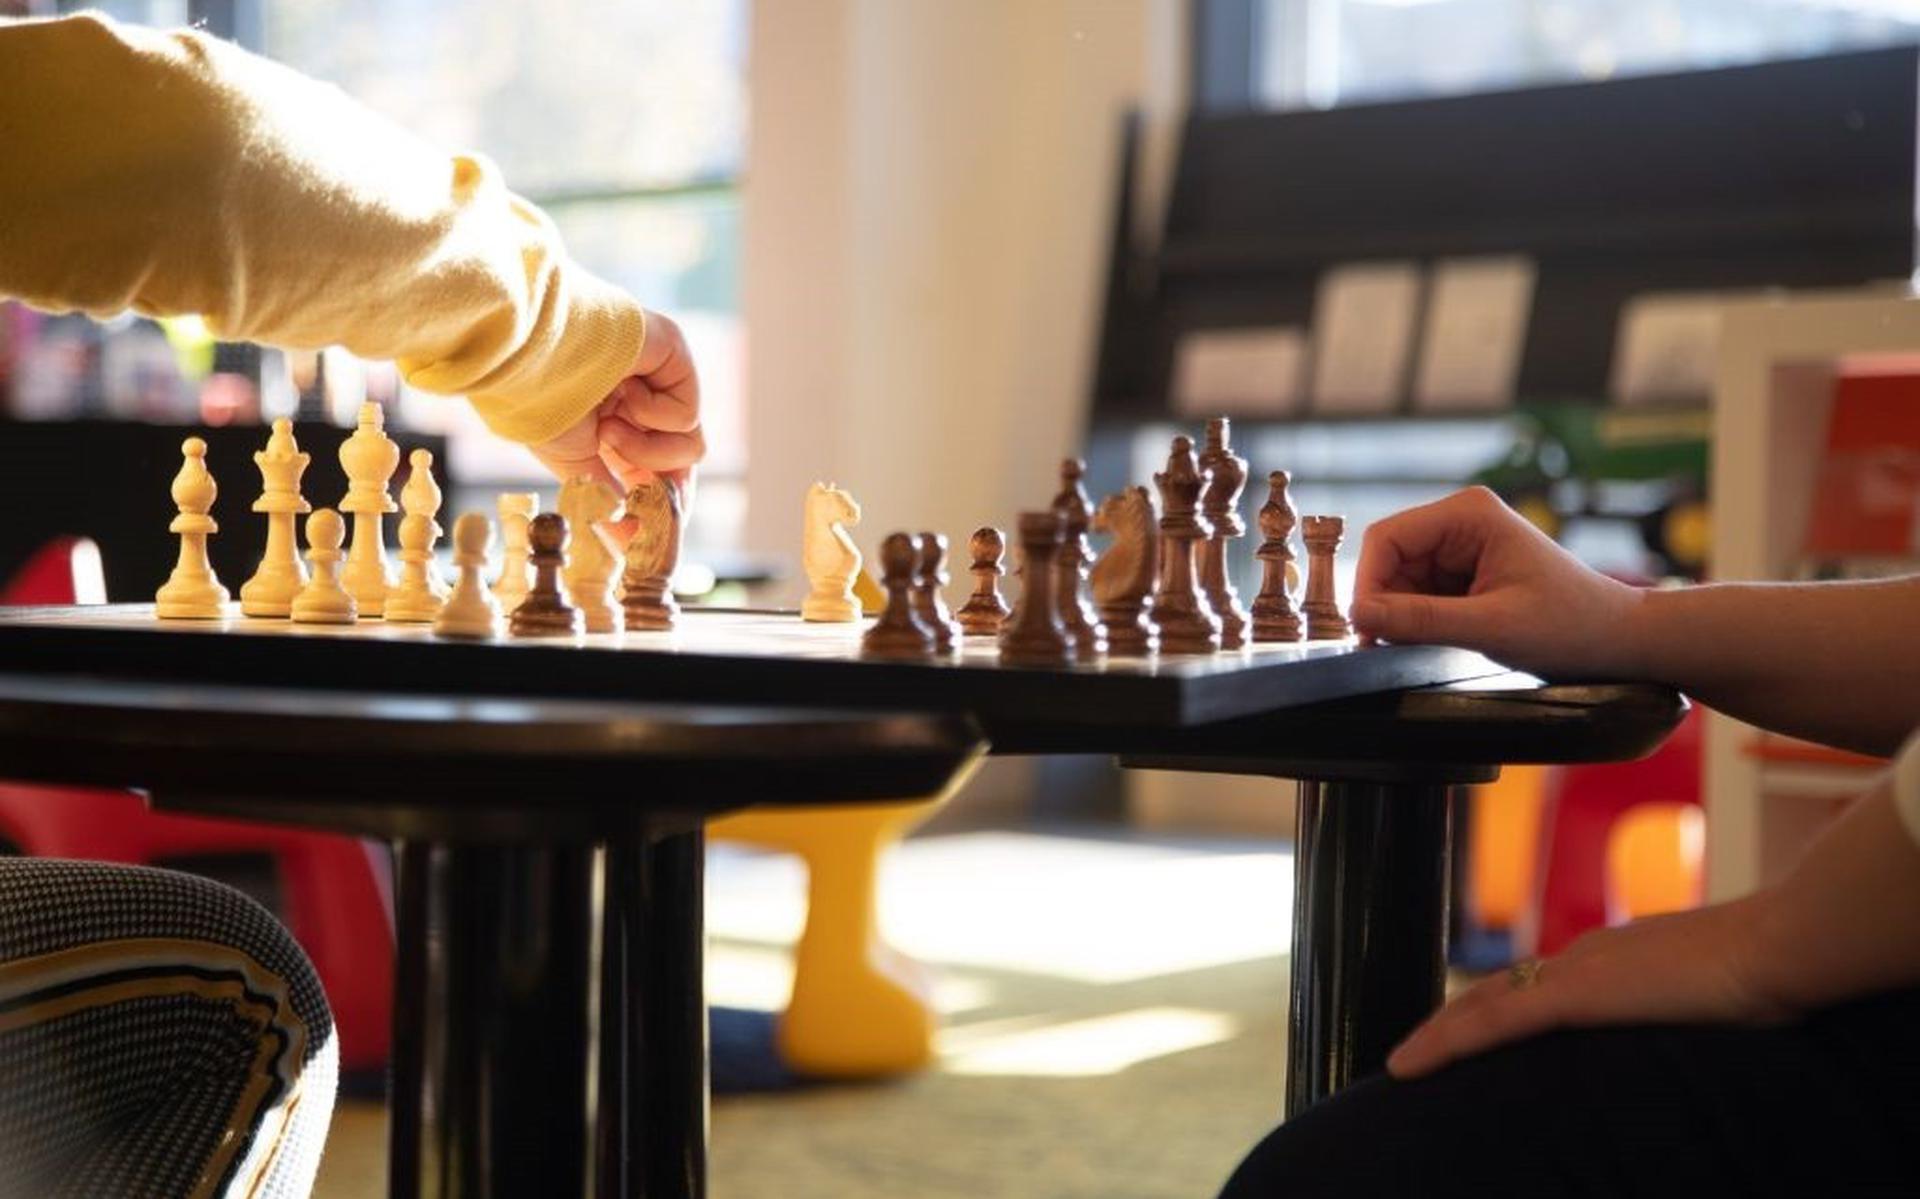 Chessdreams wordt georganiseerd in de bibliotheek in Hoogeveen.